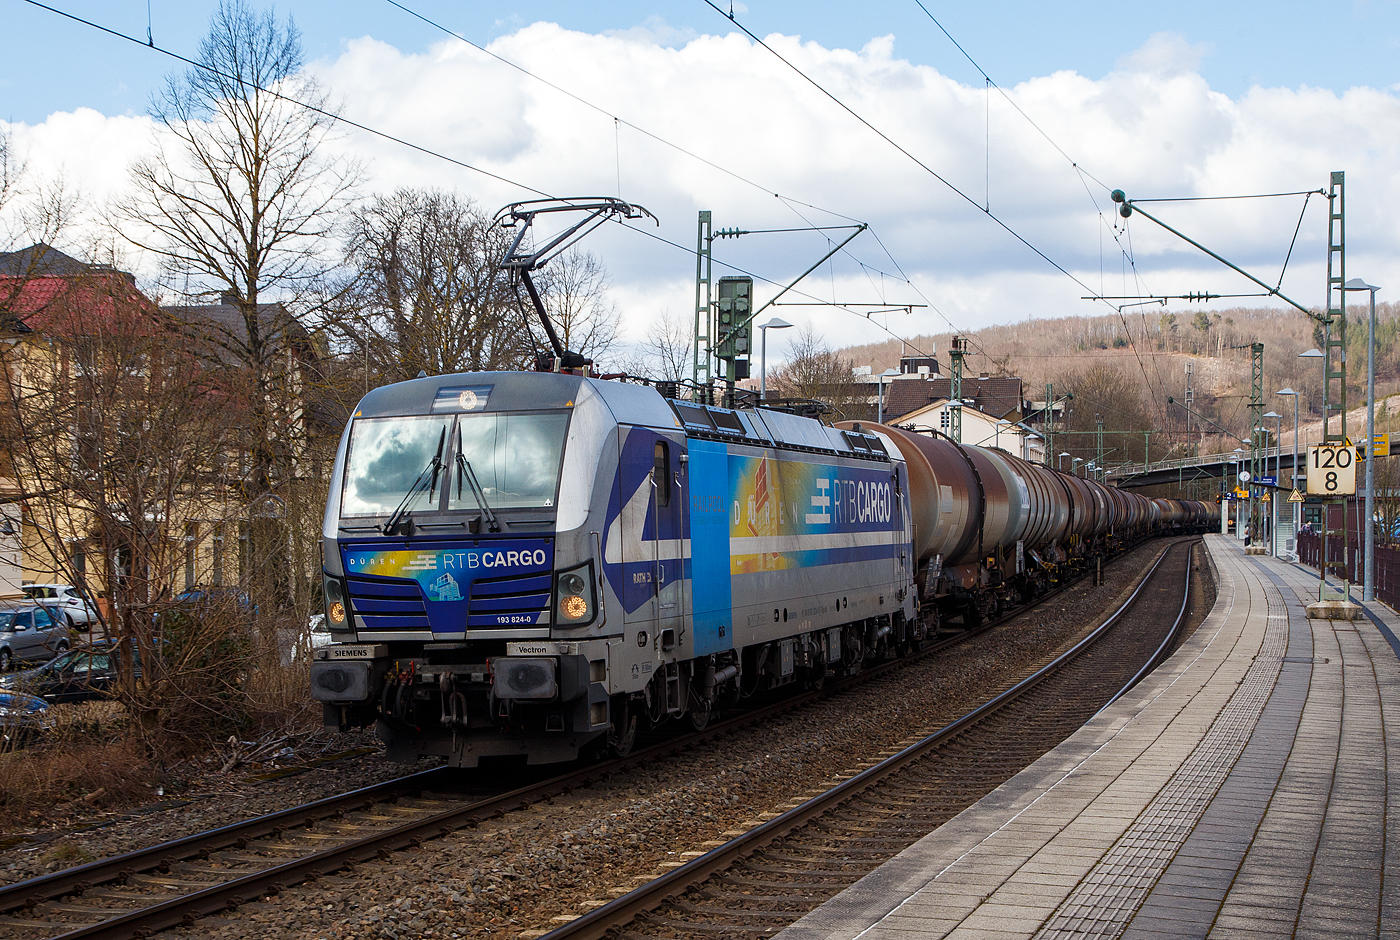 Die für die Rurtalbahn Cargo GmbH fahrende Vectron 193 824-0   Düren  (91 80 6193 824-0 D-Rpool) der Railpool GmbH (München), fährt am 19.03.2021 mit einem Kesselwagenzug durch den Bahnhof Kirchen (Sieg) in Richtung Köln.

Die SIEMENS Vectron AC (200 km/h - 6.4 MW) wurde 2016 von SIEMENS Mobilitiy in München unter der Fabriknummer 22054 gebaut. Sie hat die Zulassung für D/ A und H (RO durchgestrichen).